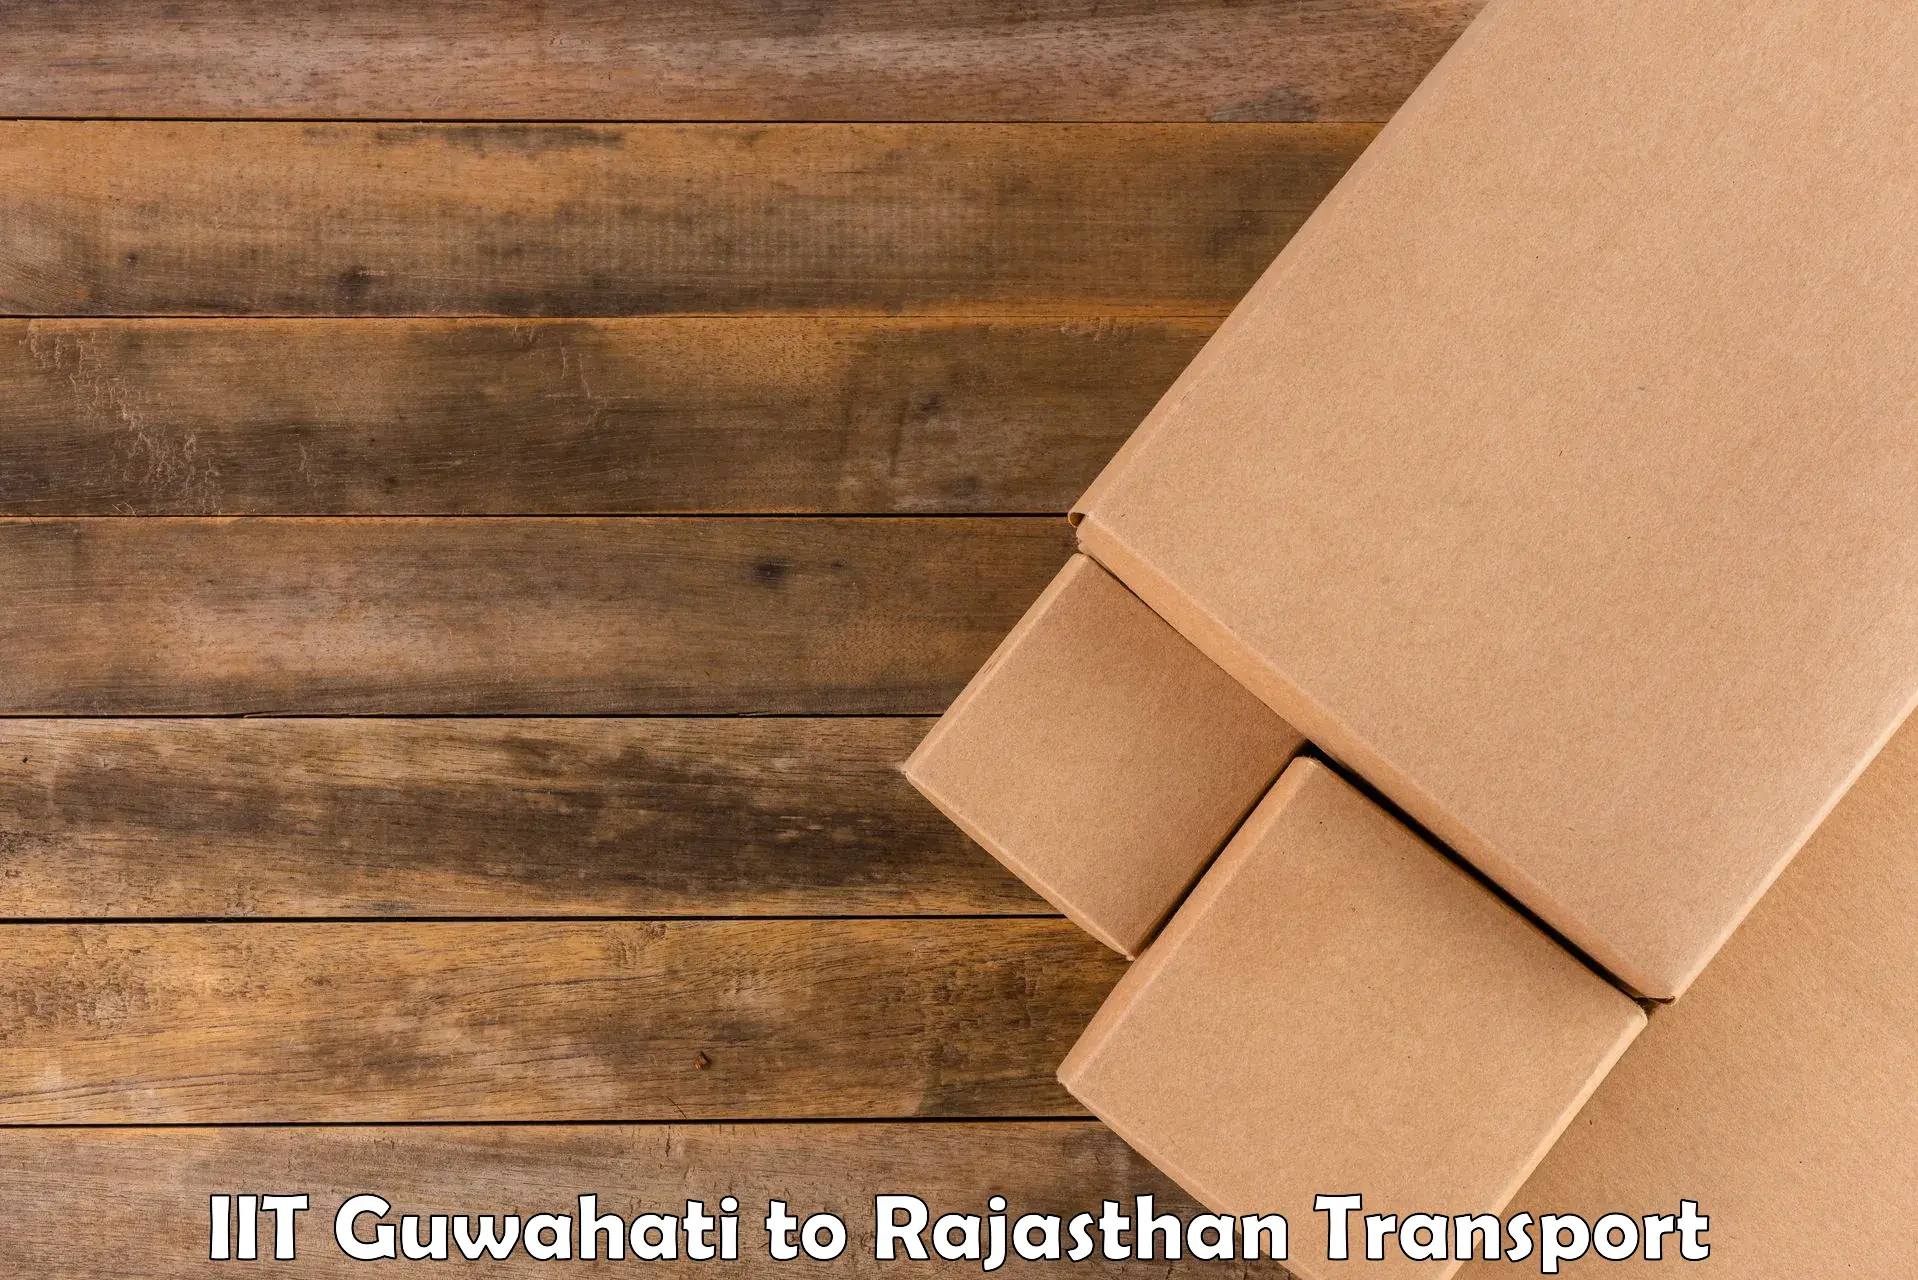 Air freight transport services IIT Guwahati to Khinwara